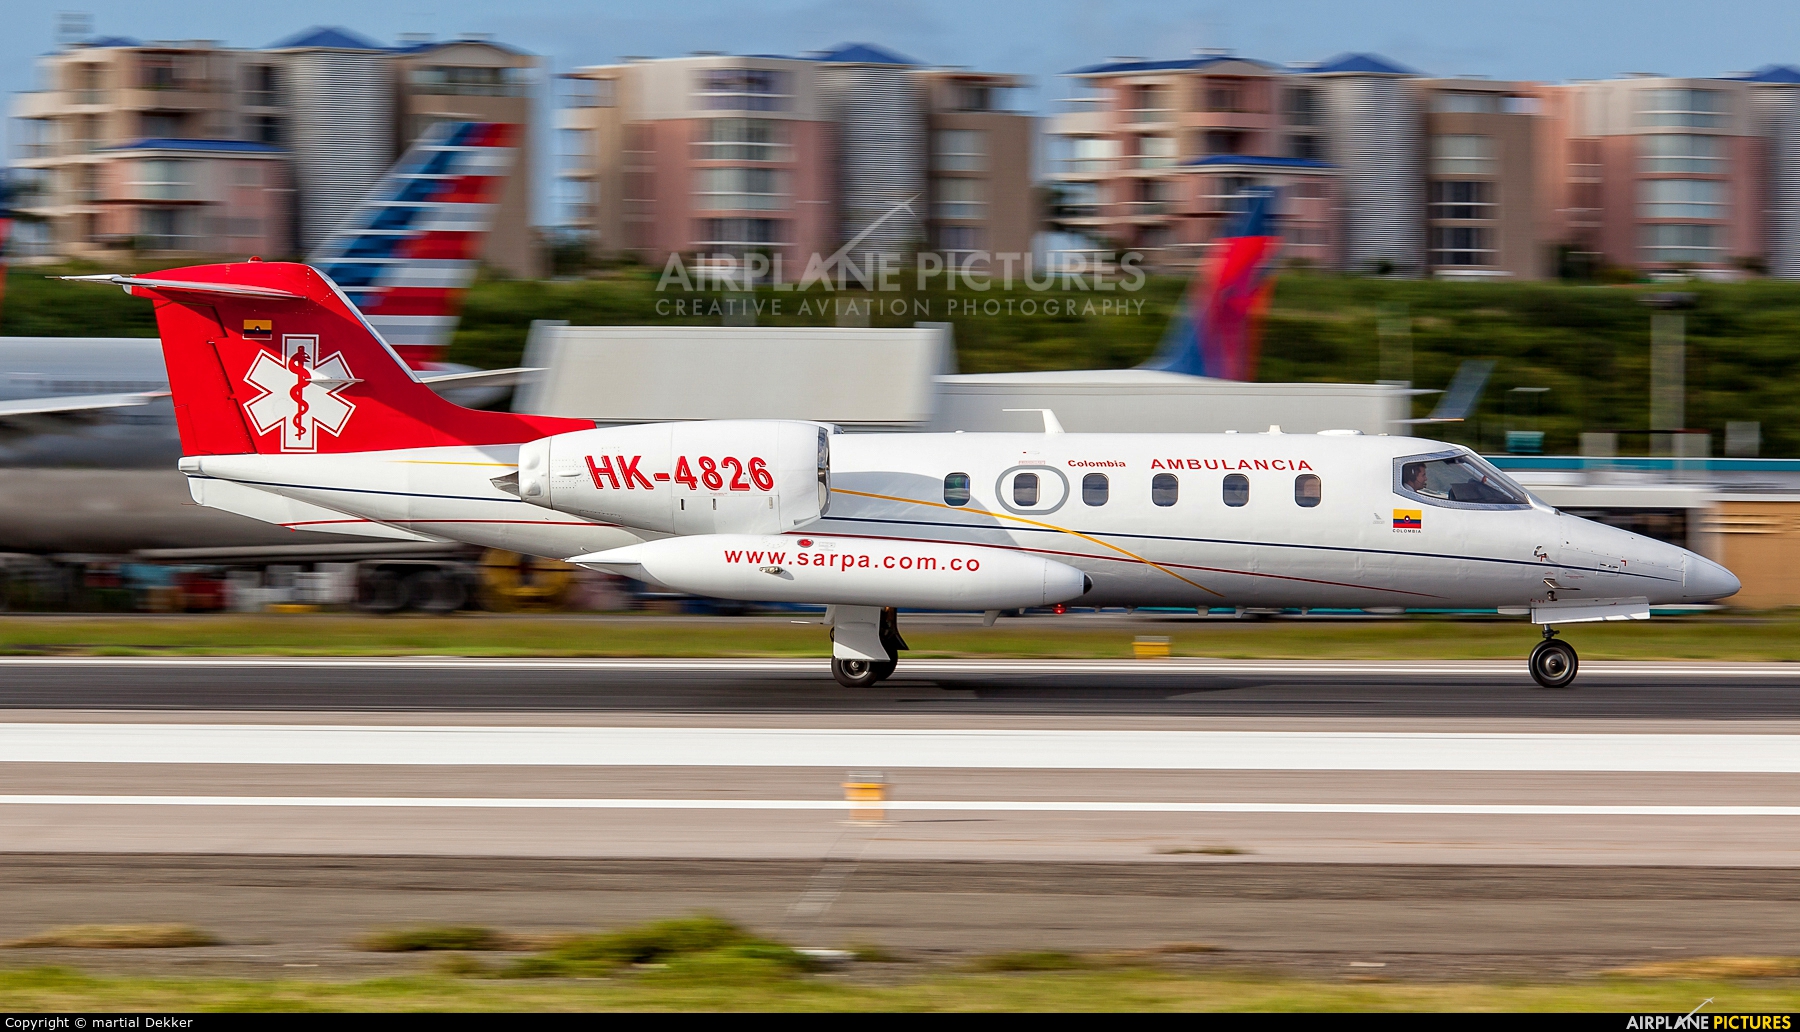 Sarpa HK-4826 aircraft at Sint Maarten - Princess Juliana Intl